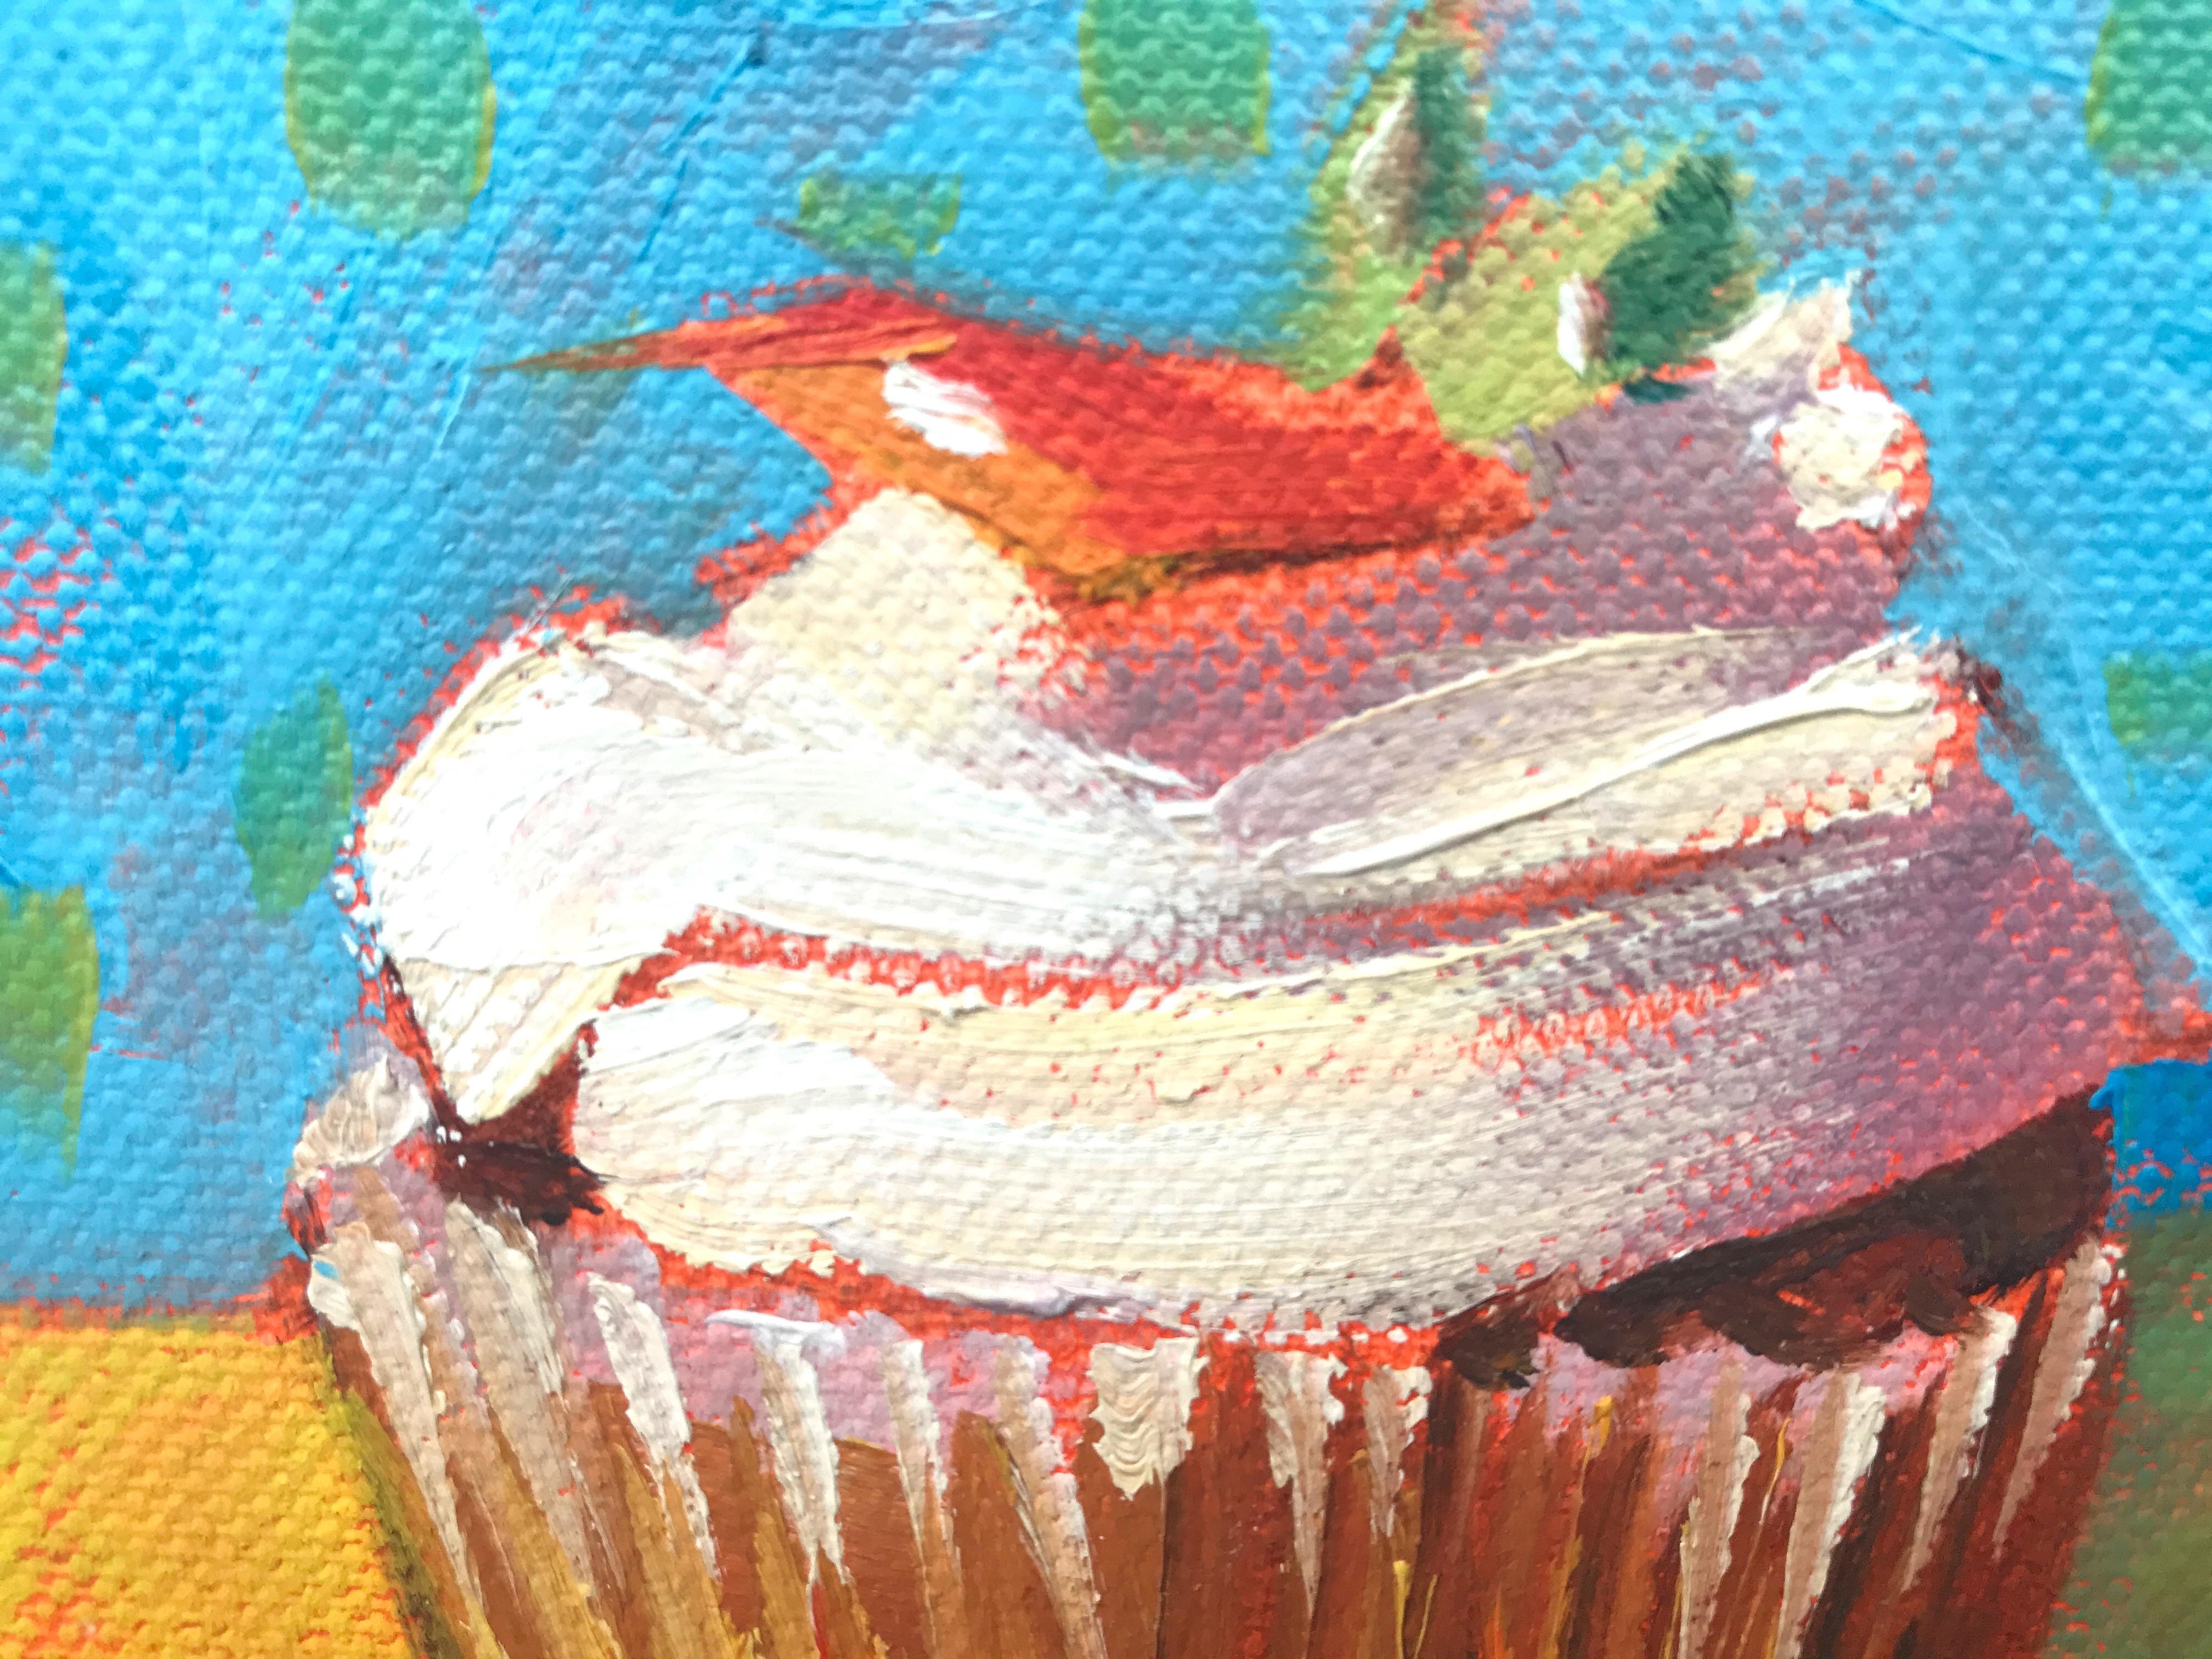 cupcake paintings